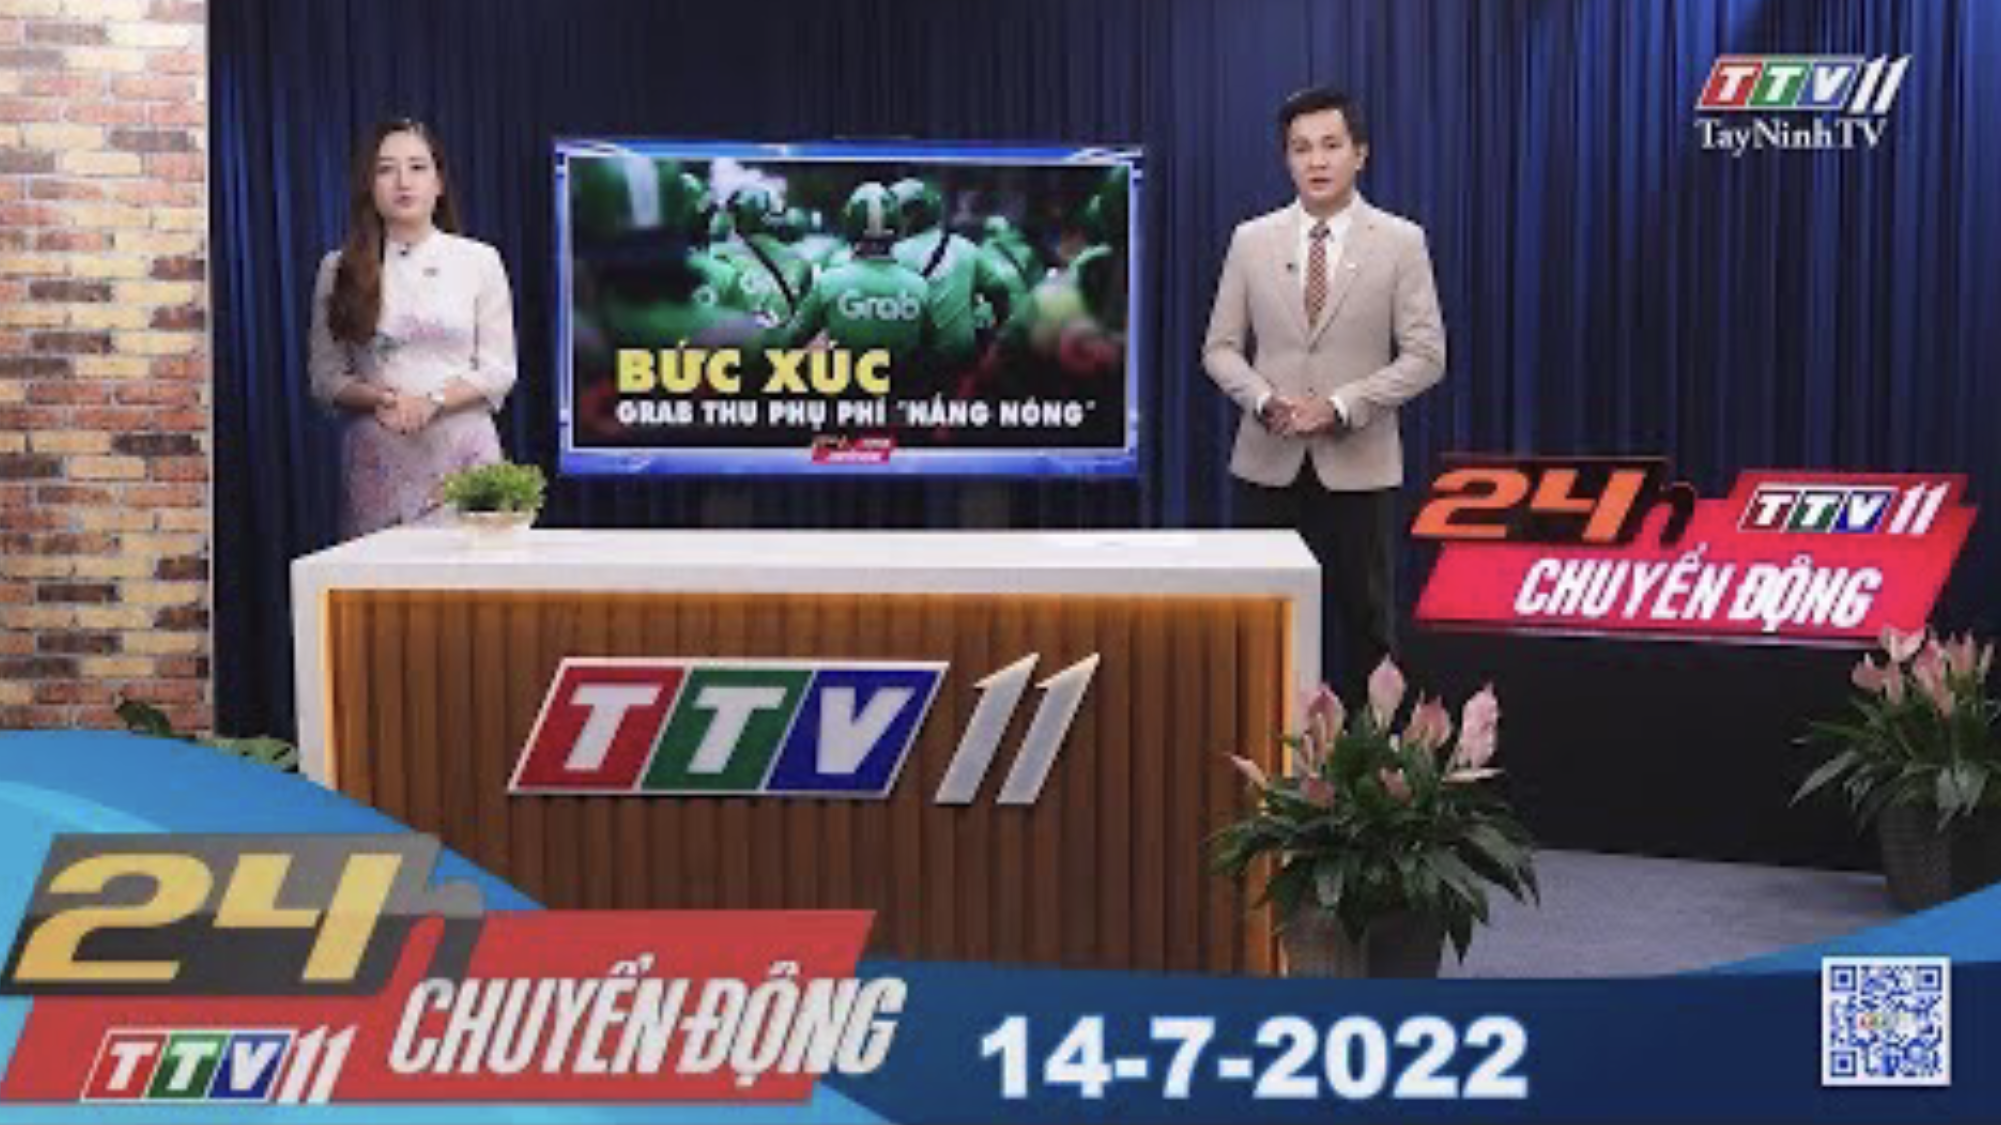 24h Chuyển động 14-7-2022 | Tin tức hôm nay | TayNinhTV